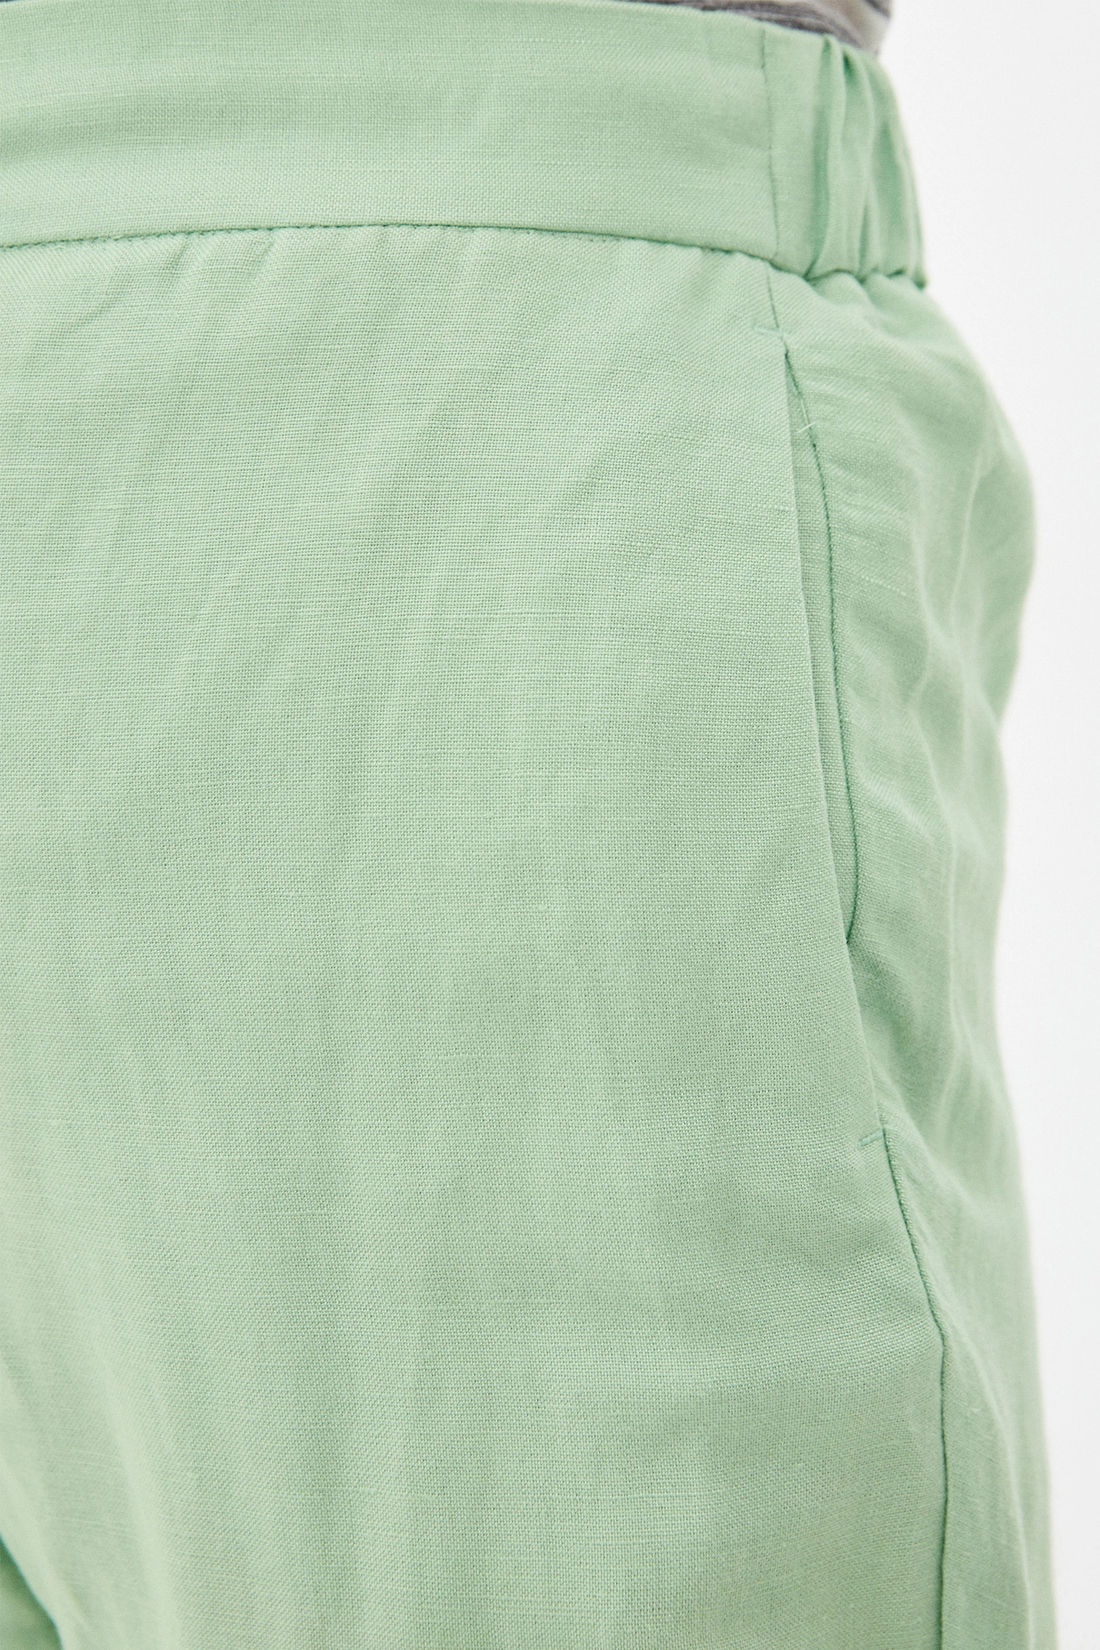 Спортивные брюки женские Baon B290048 зеленые S